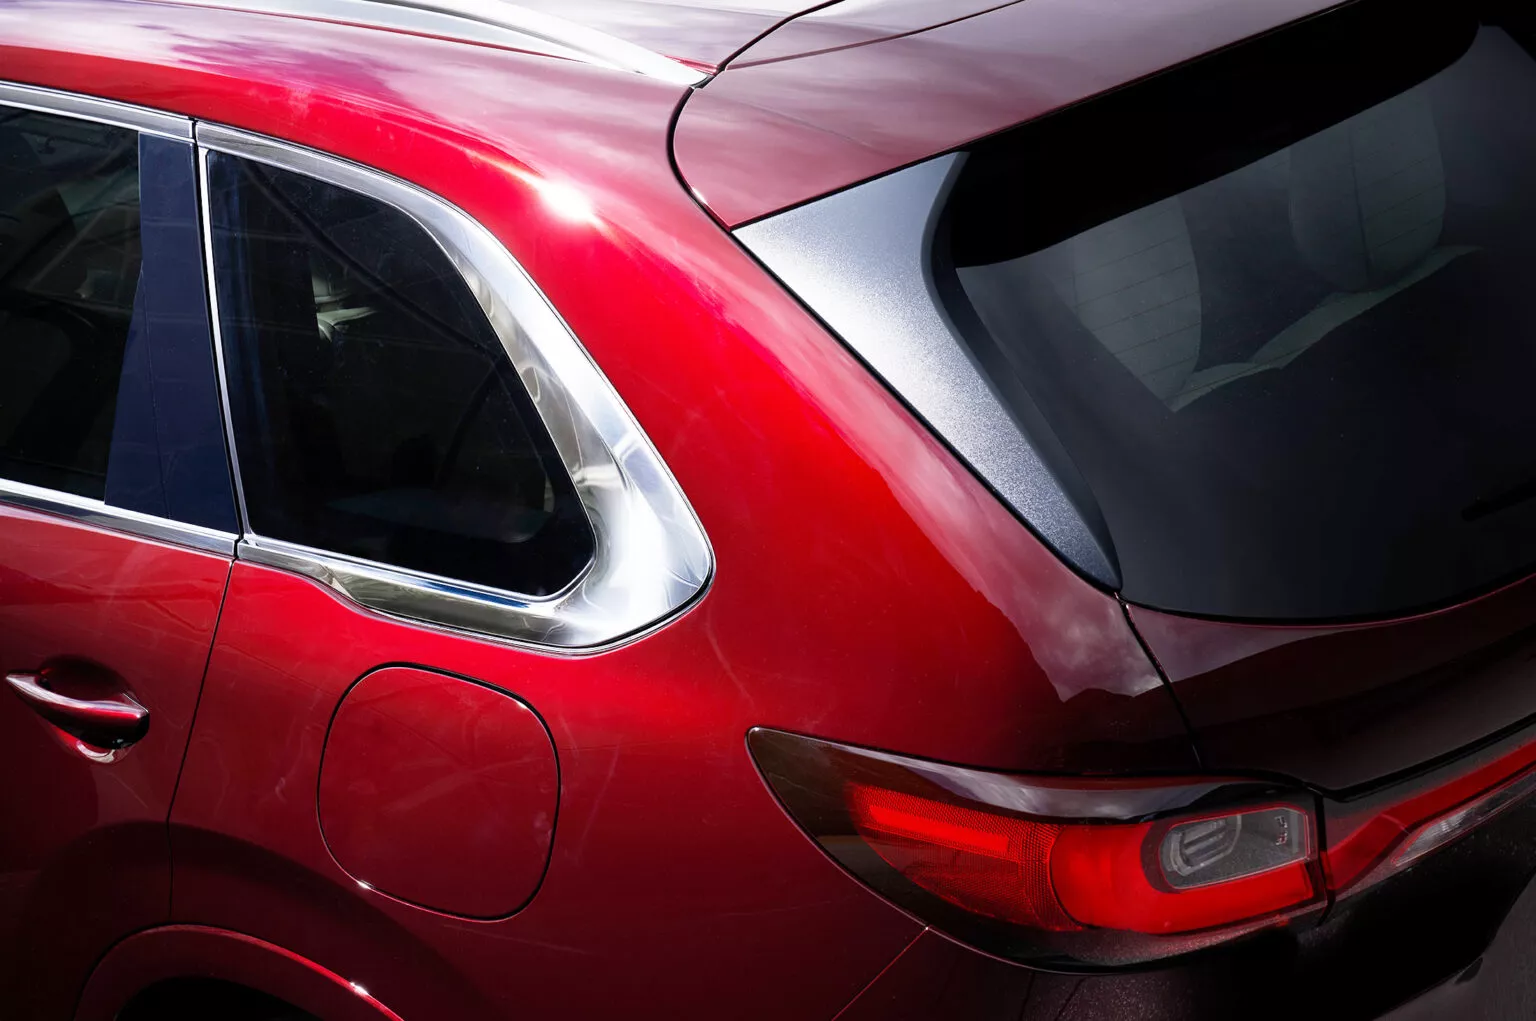 Mazda CX-80 tung ảnh ‘nhá hàng’, ra mắt vào ngày 18/4 mazda-cx-80-teaser-1s-1536x1021.webp